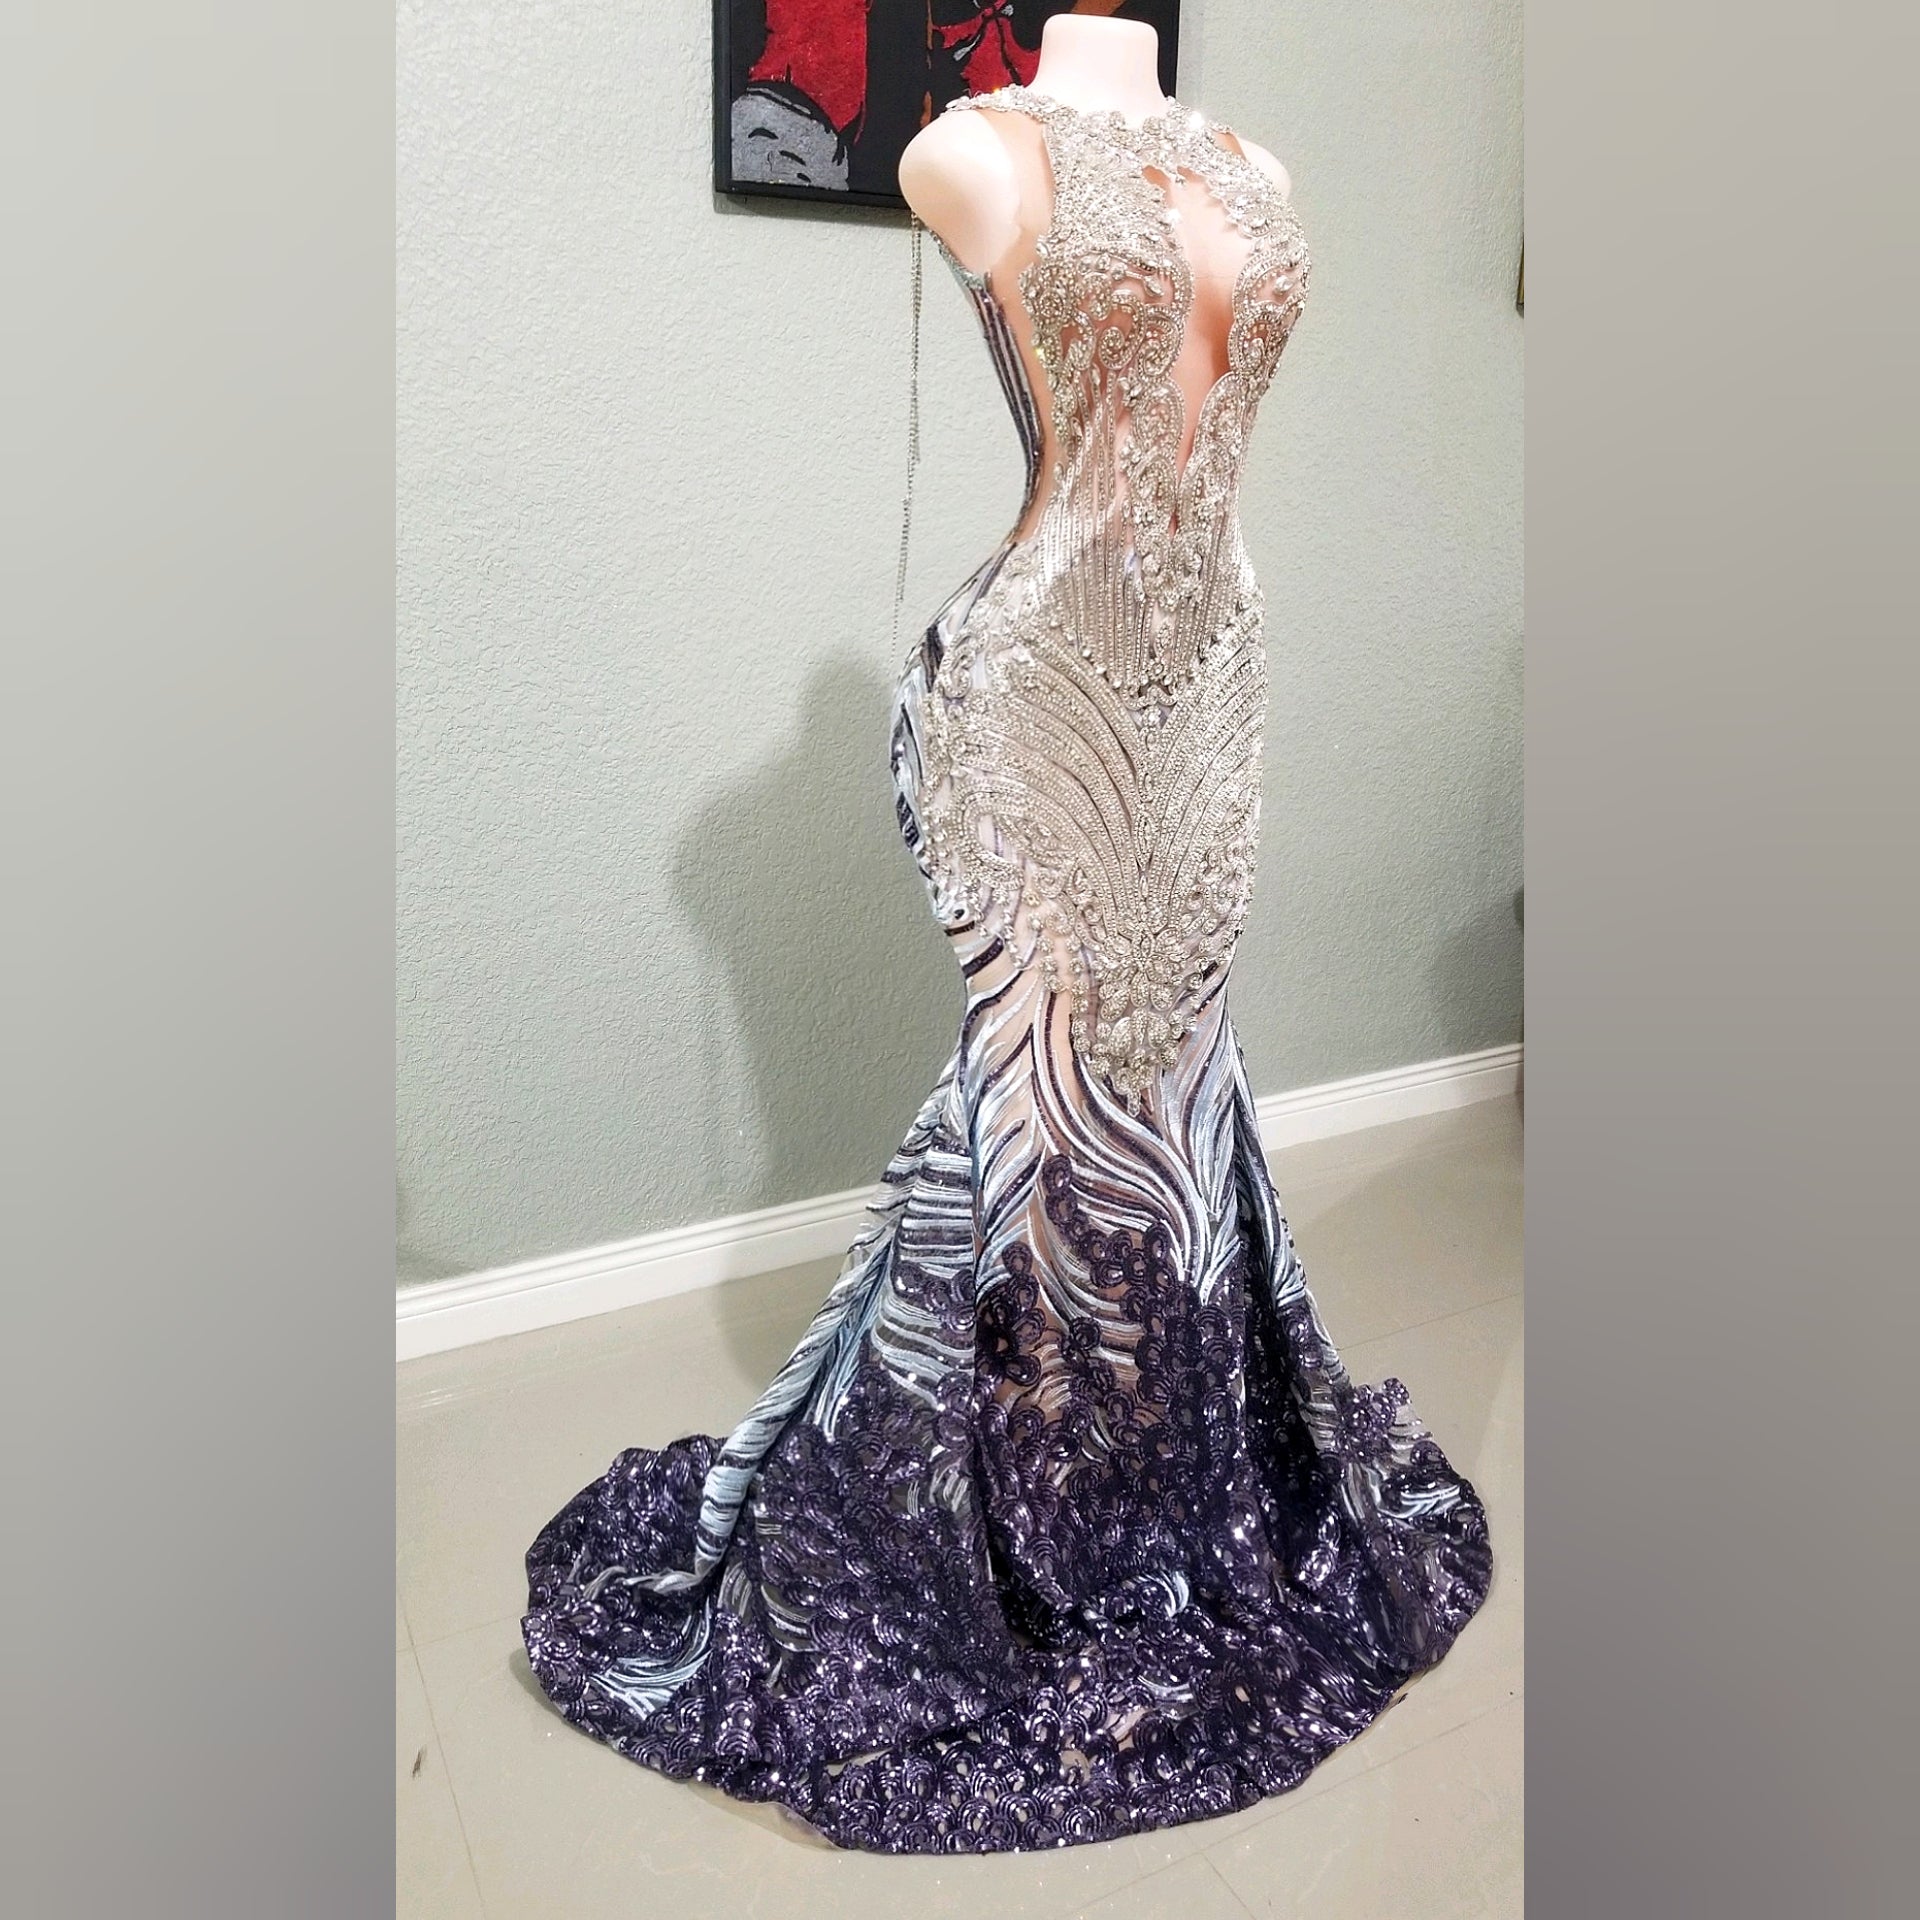 DyNasty Rhinestone Sequin Mermaid Dress